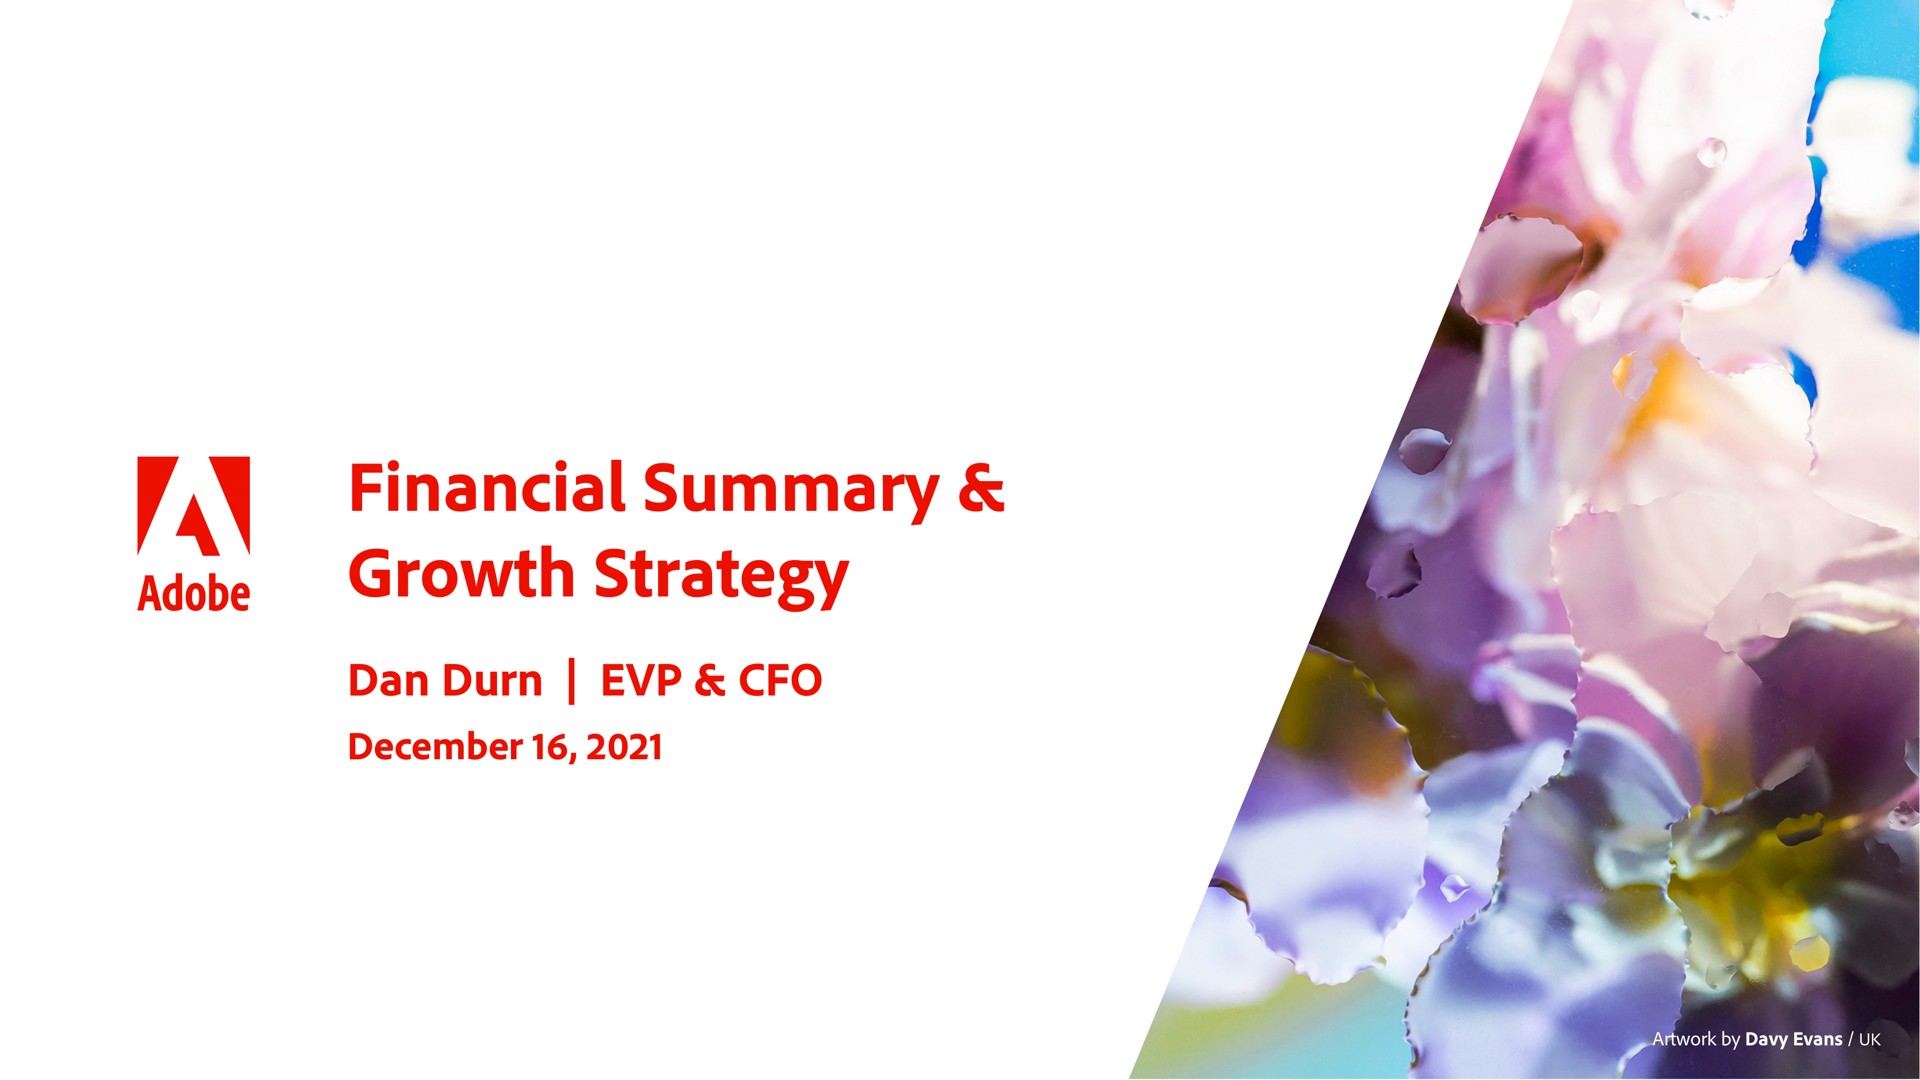 financial summary growth strategy an adobe dan durn | Adobe